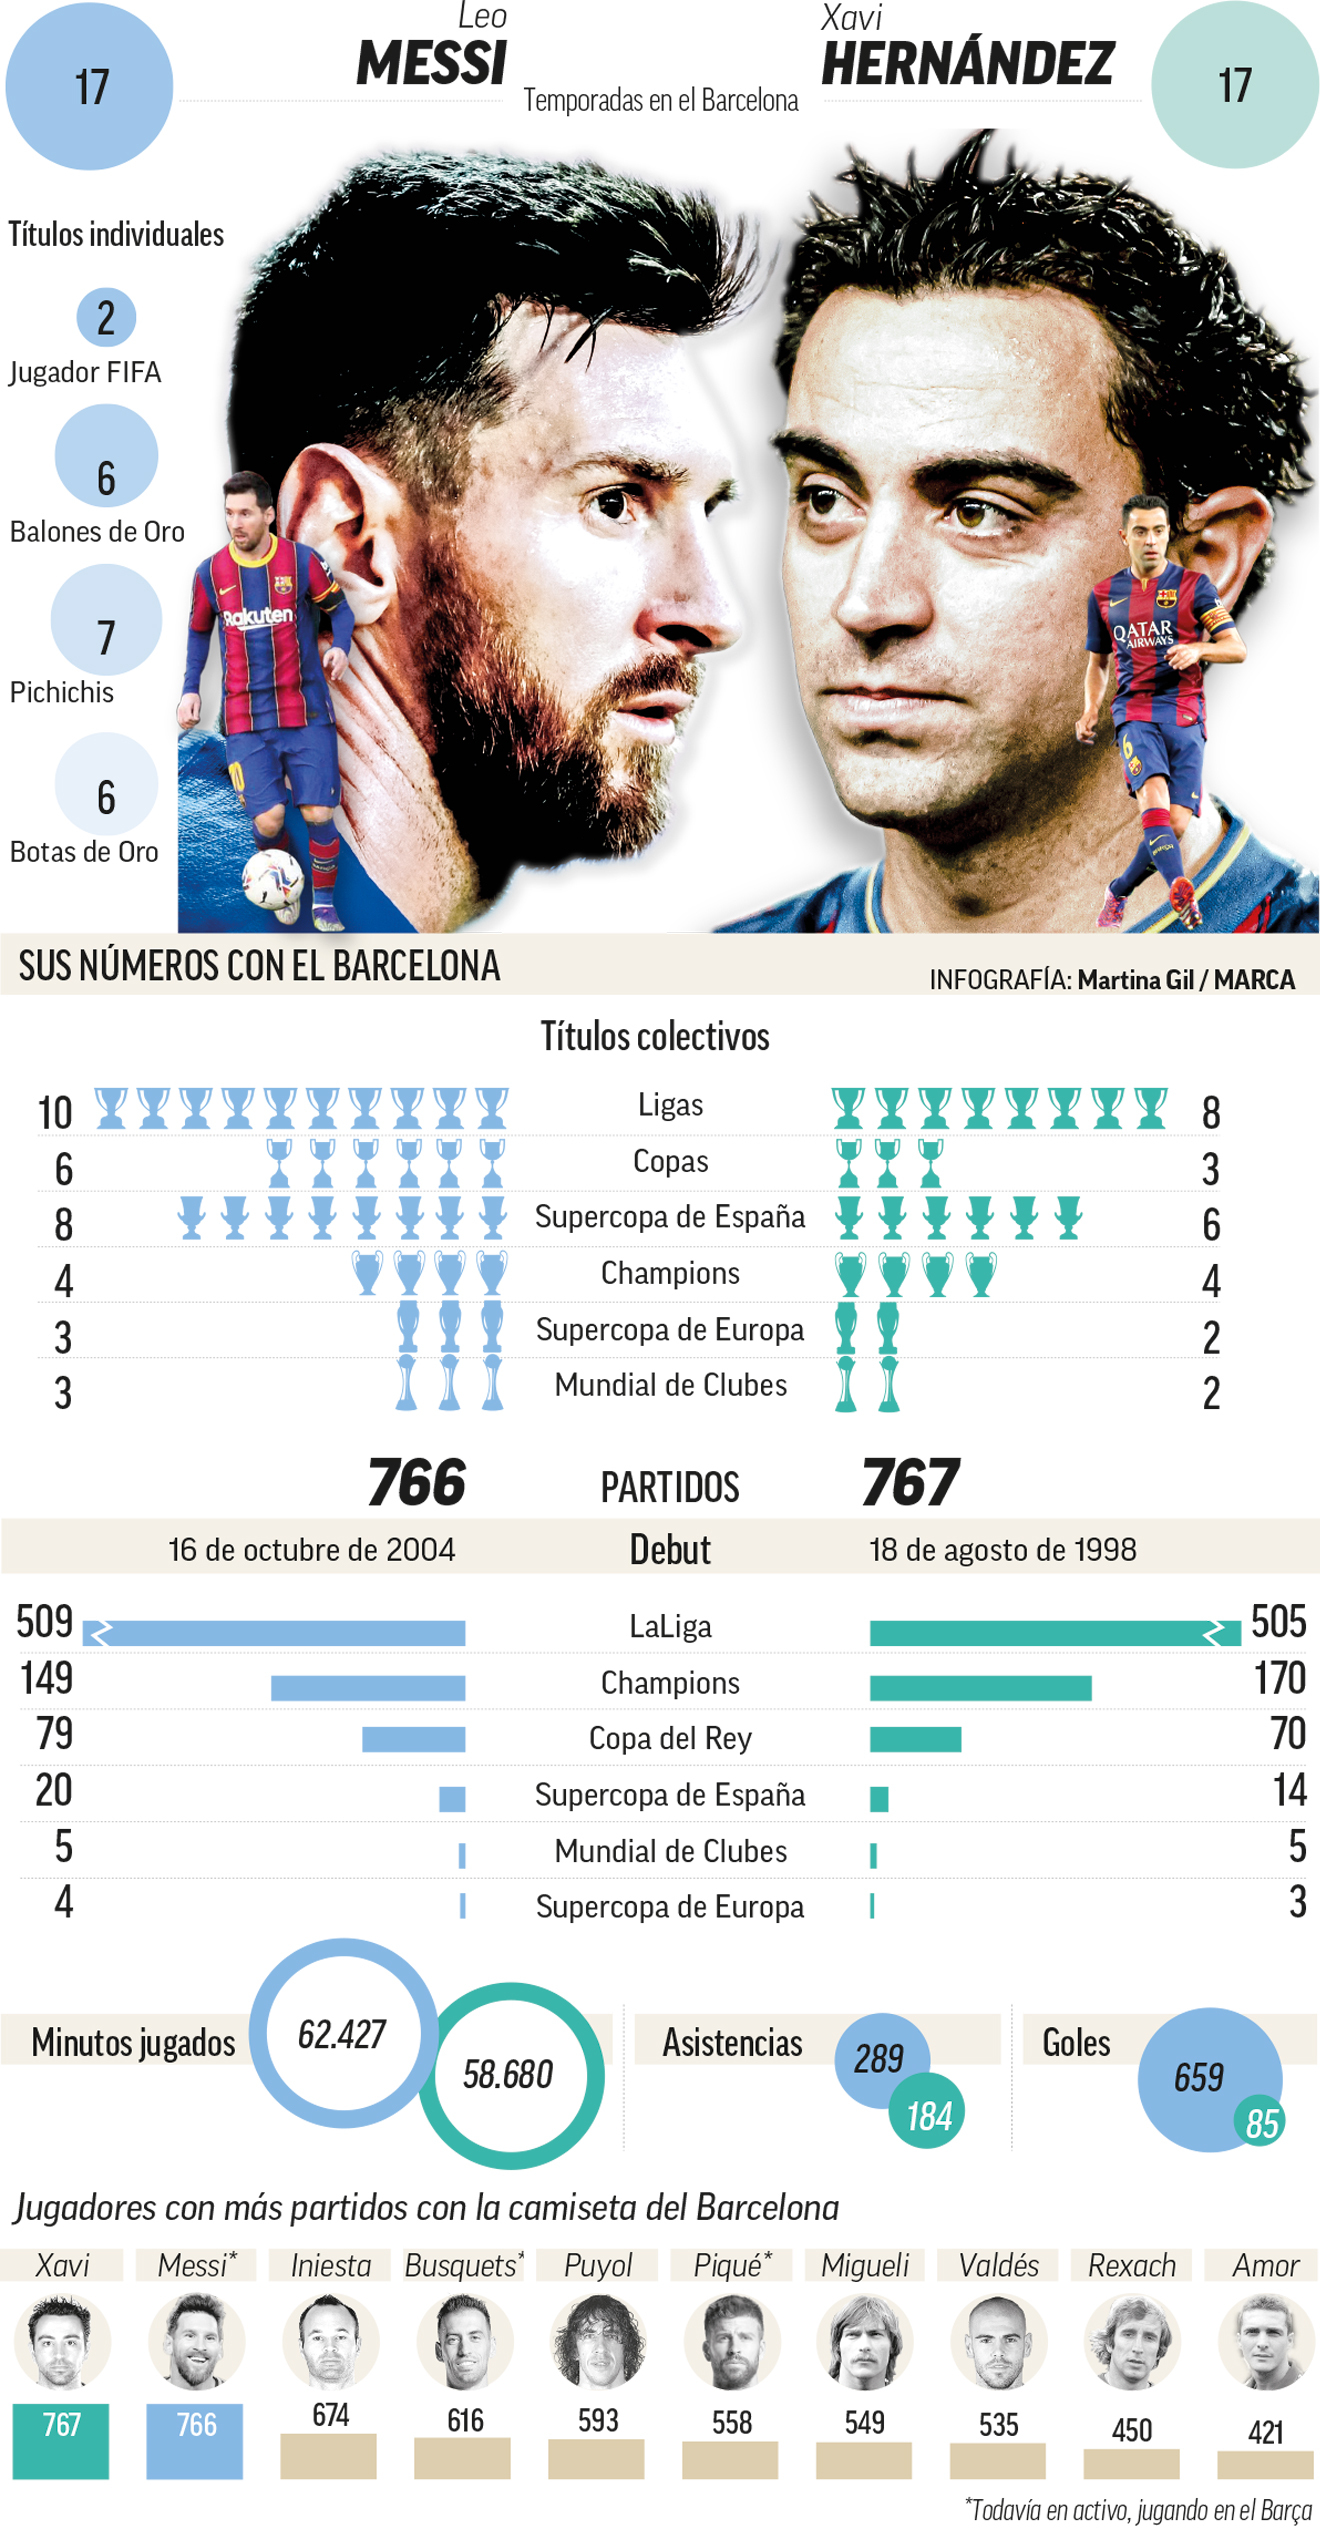 Messi iguala a Xavi con ms juegos en el Barcelona y agranda su leyenda